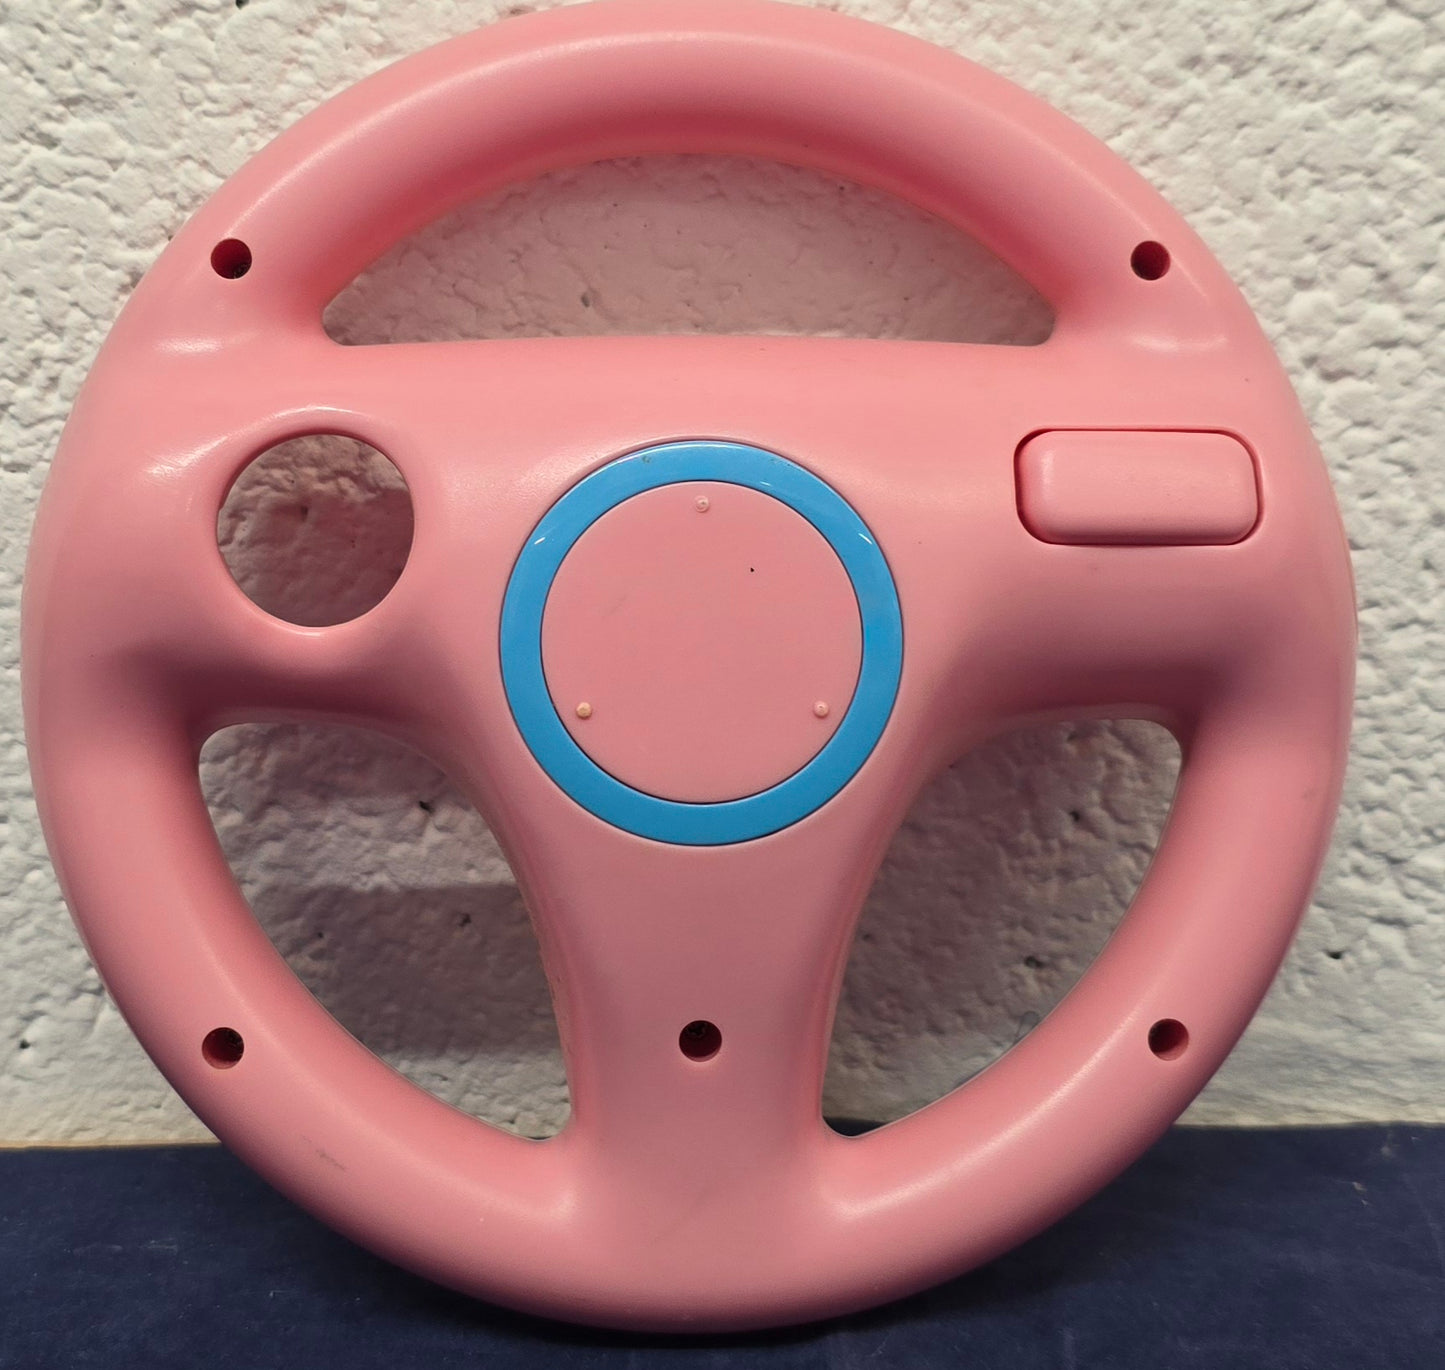 Pink Steering Wheel Nintendo Wii